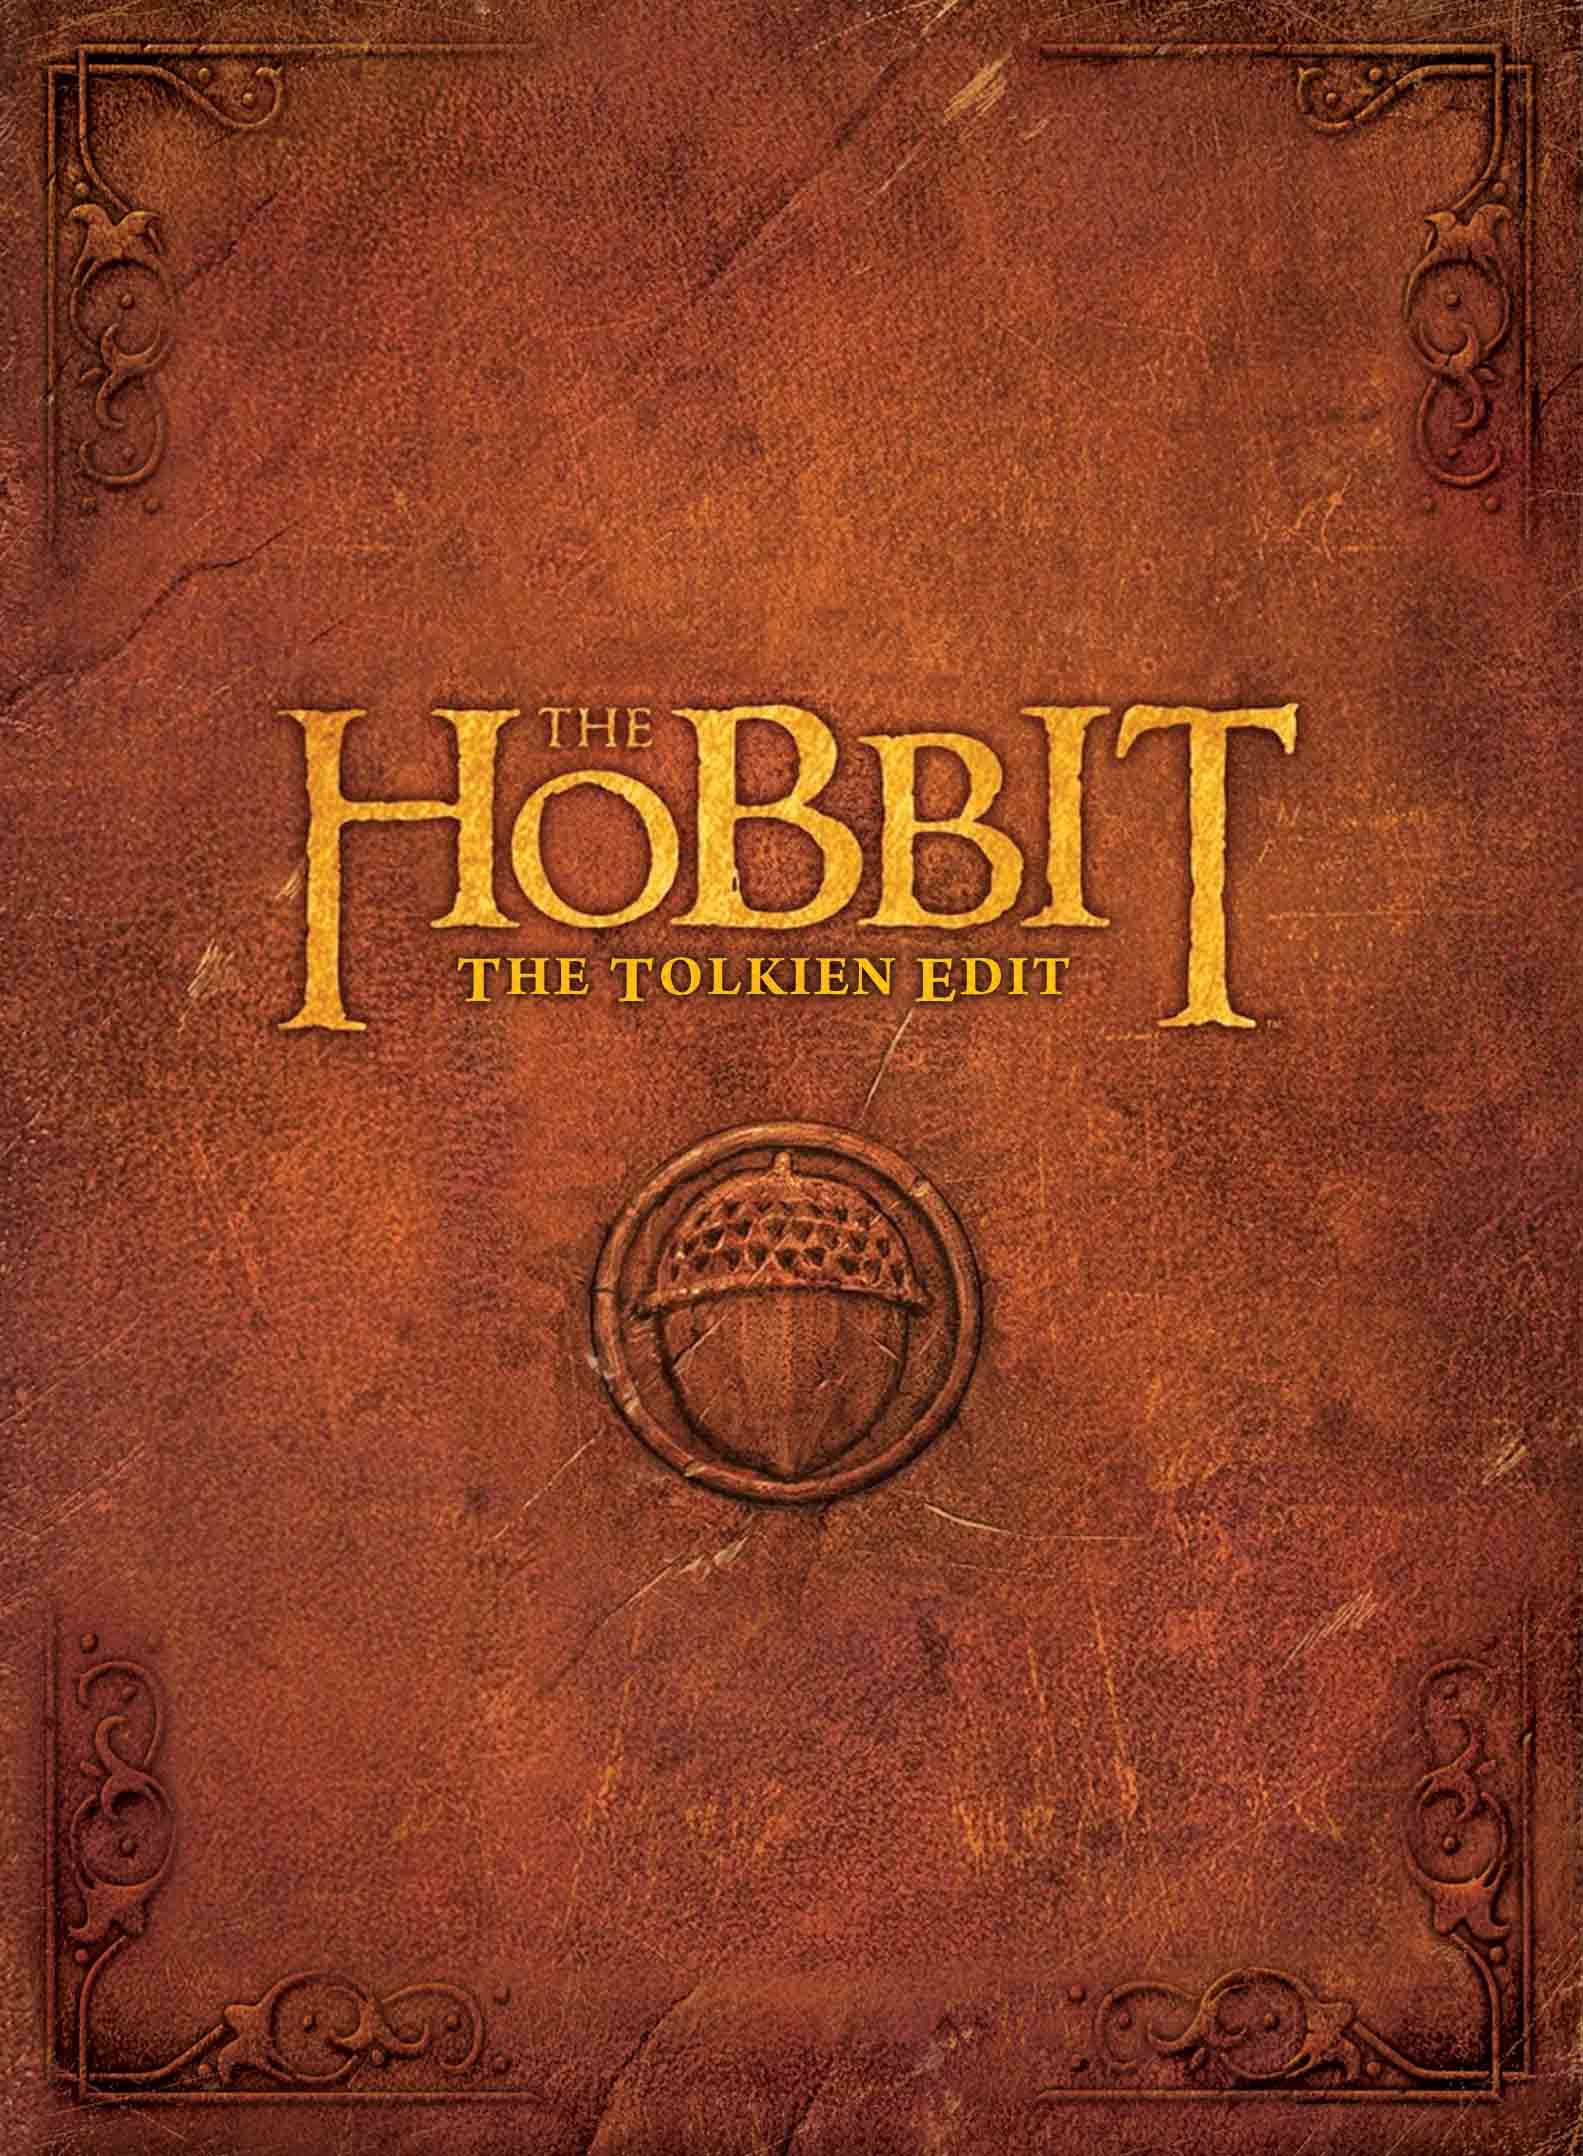 The Hobbit: The Tolkien Edit